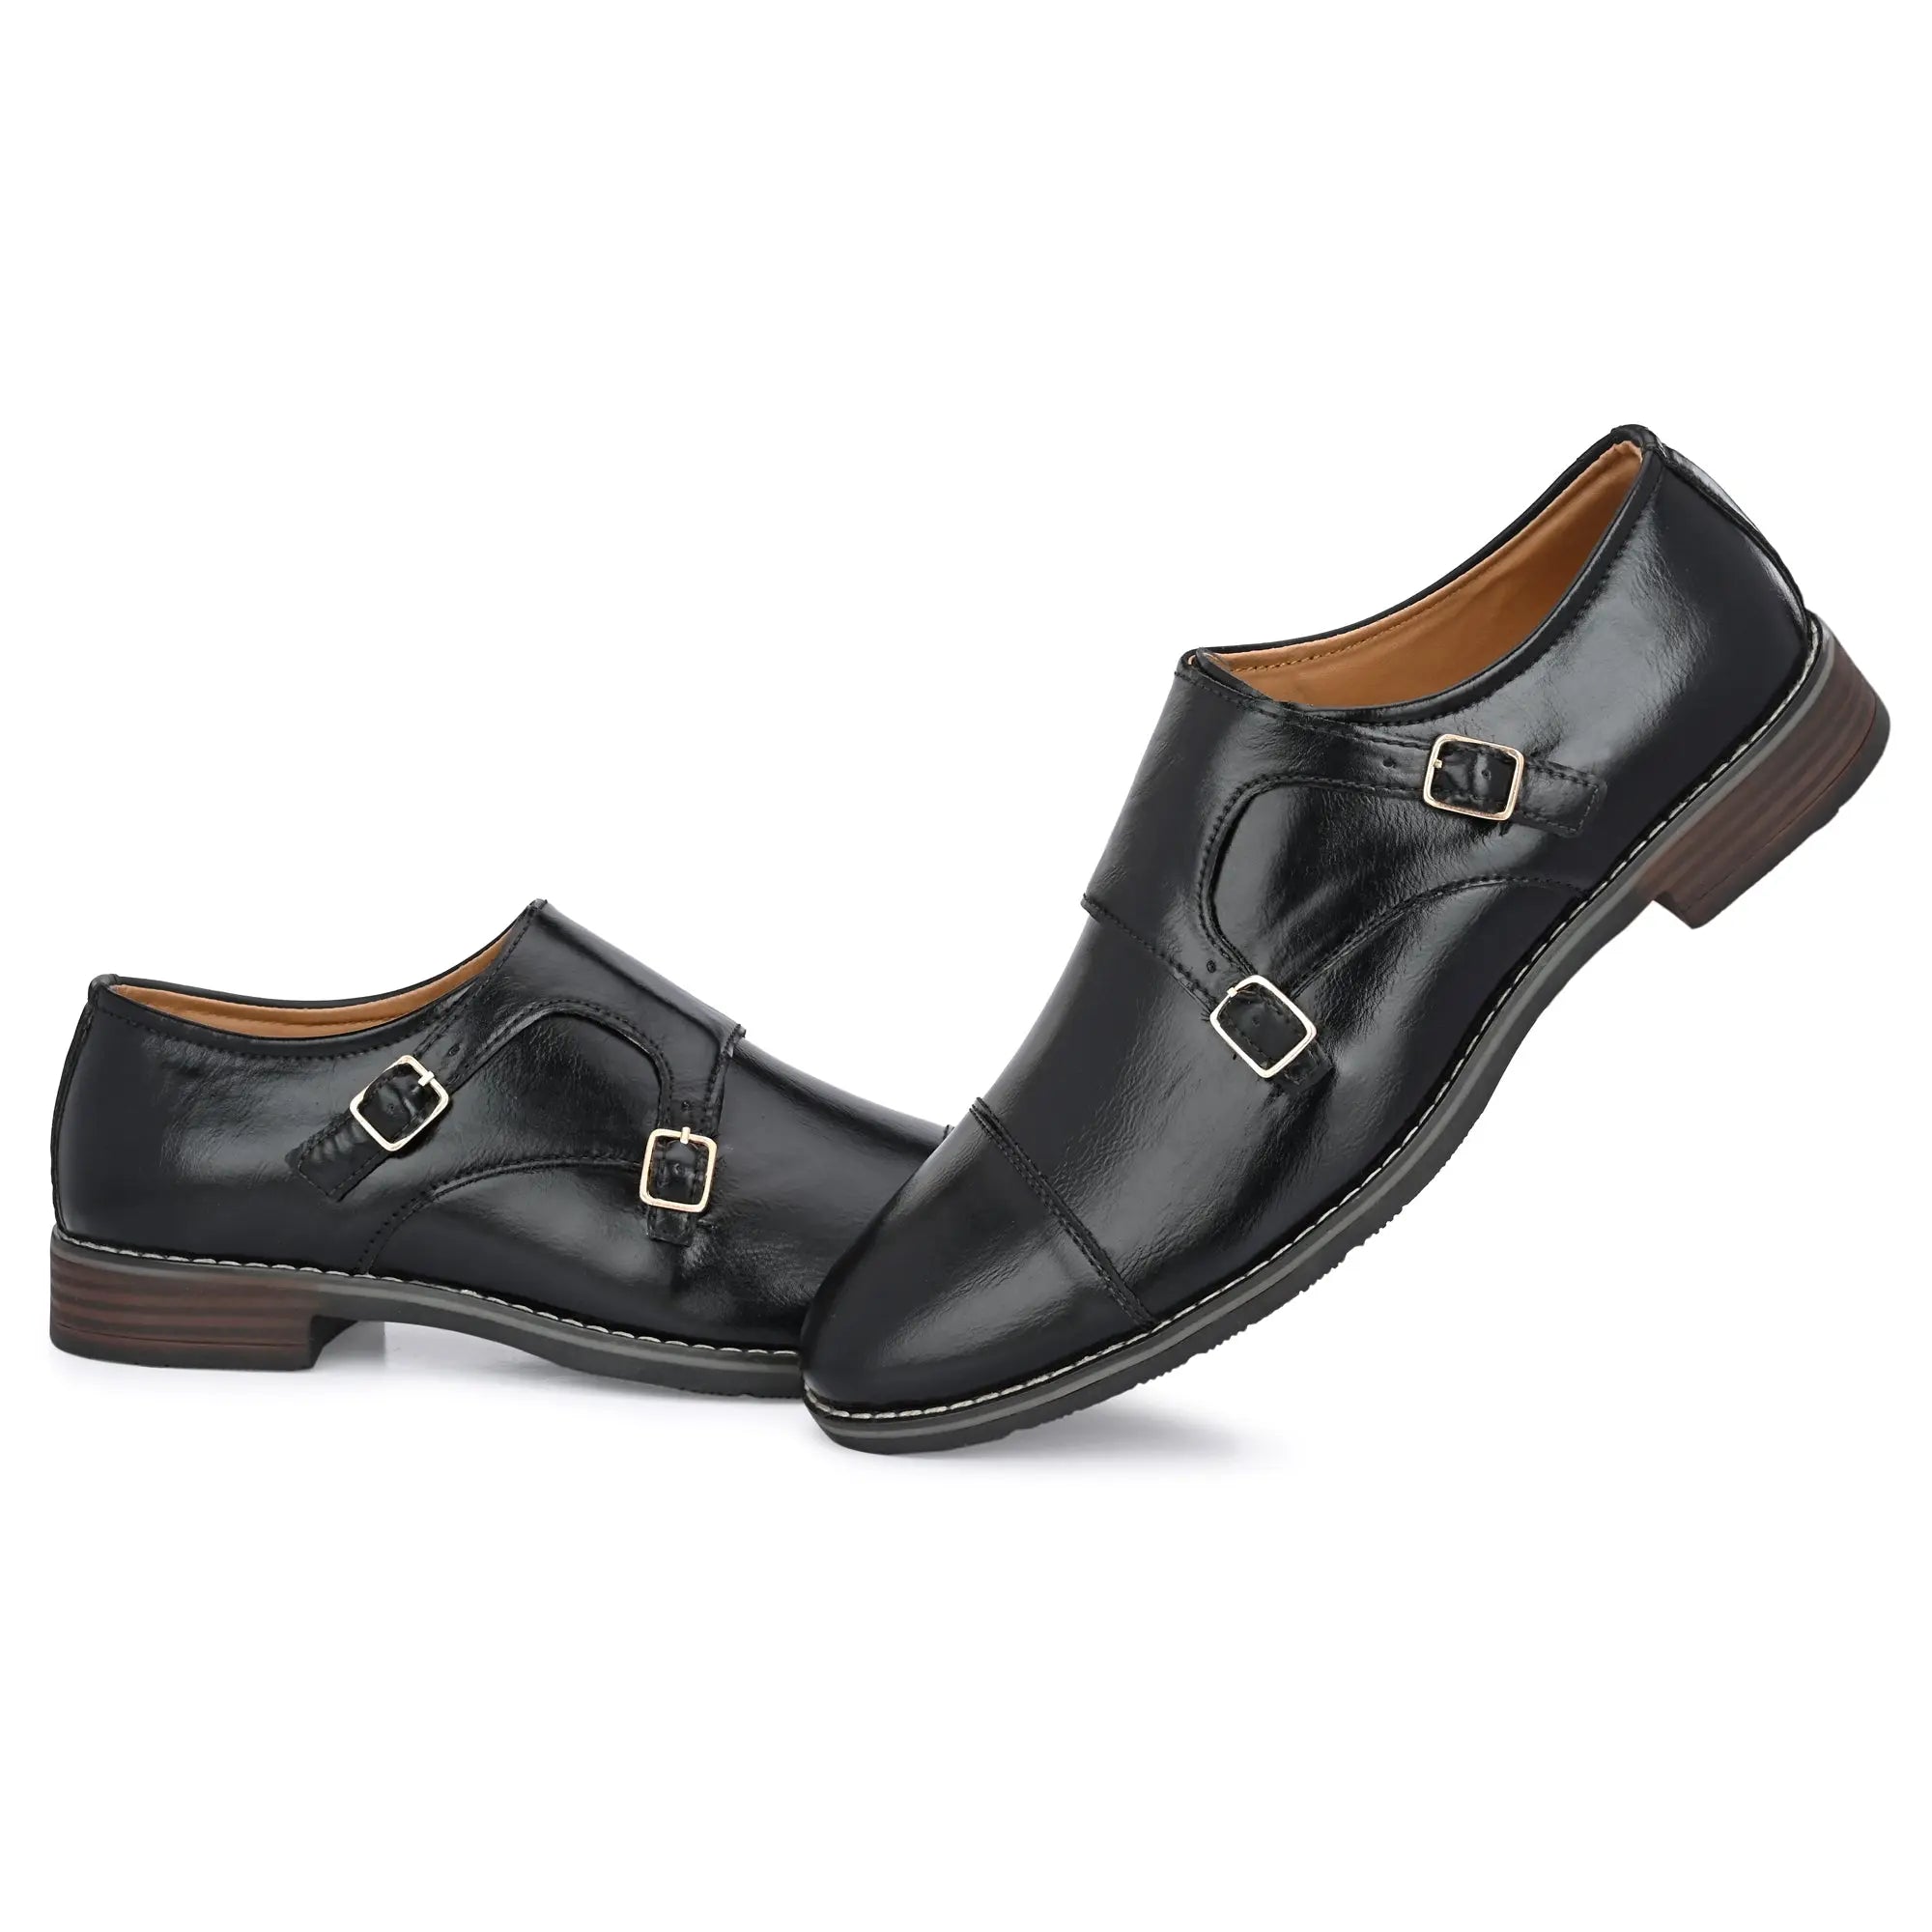 black-double-monk-strap-attitudist-shoes-for-men-with-buckle-sp4a